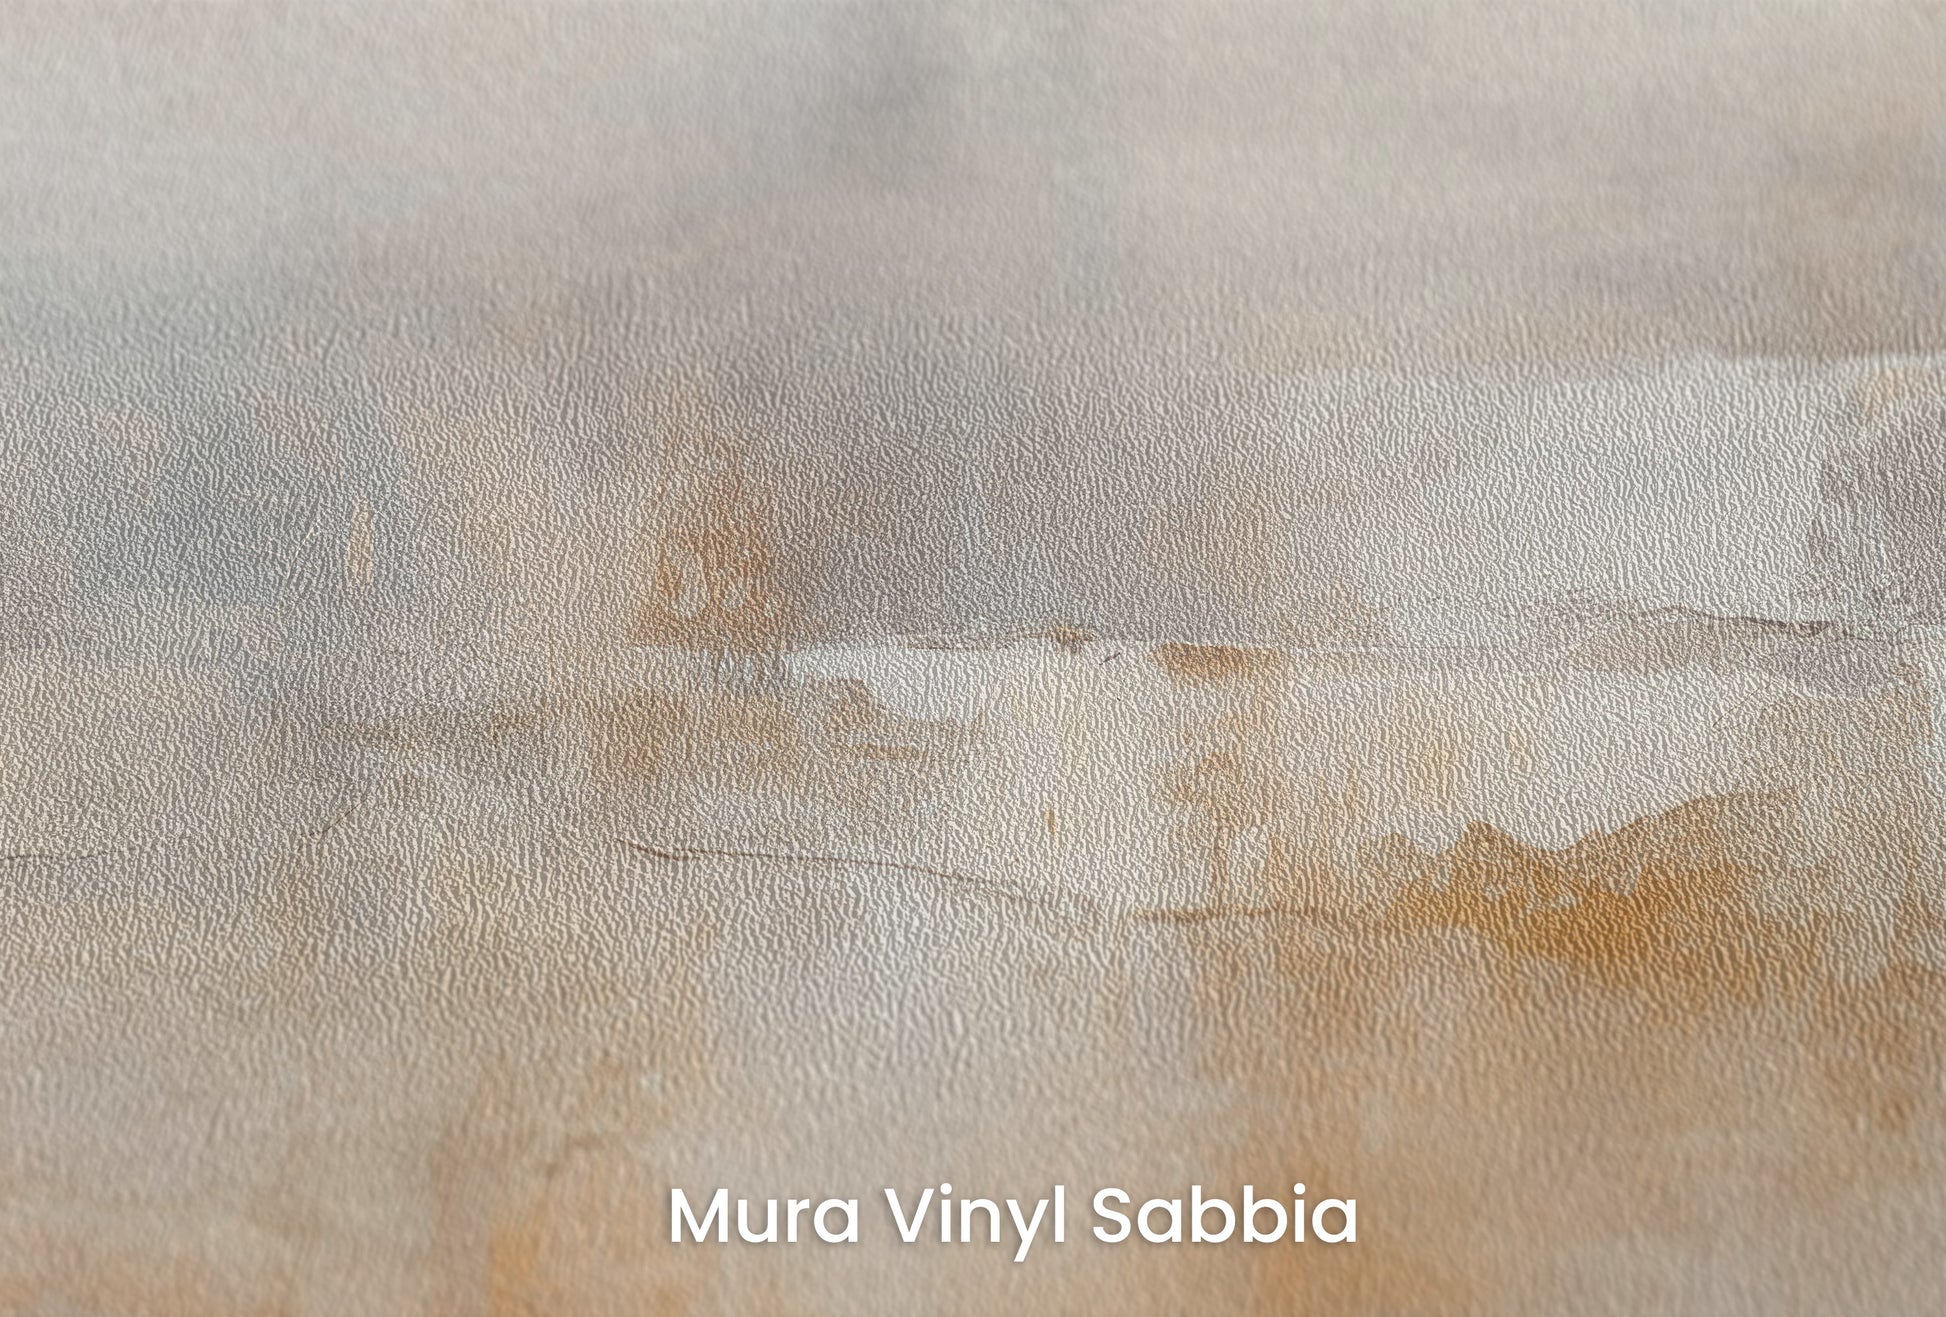 Zbliżenie na artystyczną fototapetę o nazwie SILENT DAWN WHISPERS na podłożu Mura Vinyl Sabbia struktura grubego ziarna piasku.